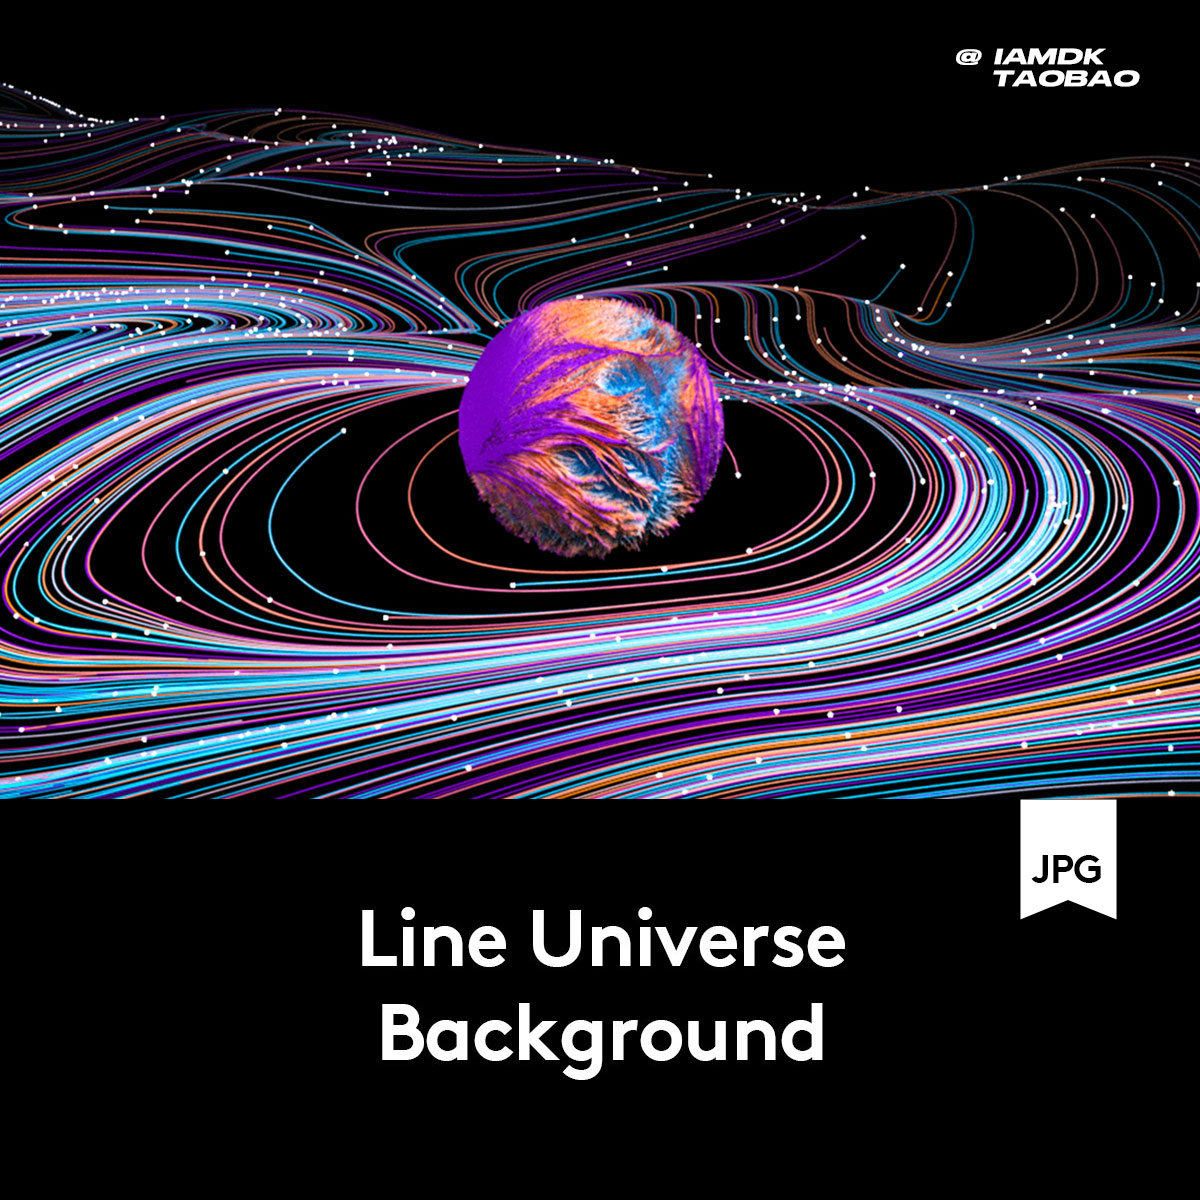 13款抽象炫酷未来宇宙星球波浪曲线背景图片设计素材 B2021061501